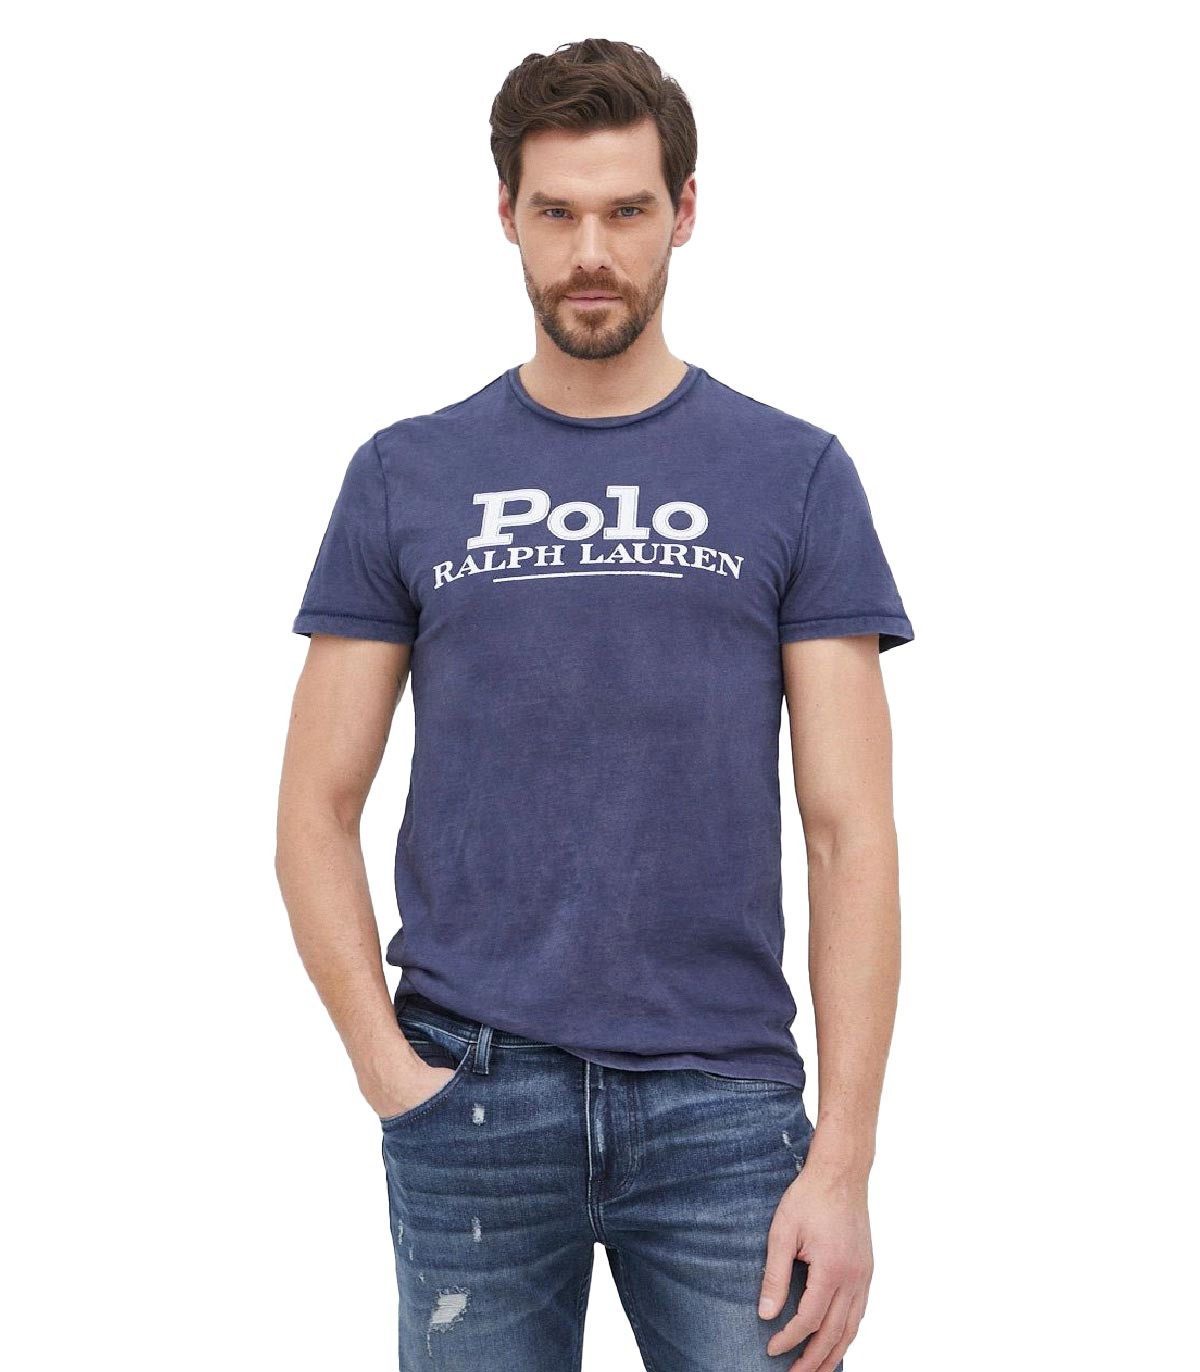 Polo Ralph Lauren - Camiseta de Algodón con Logotipo - Azul